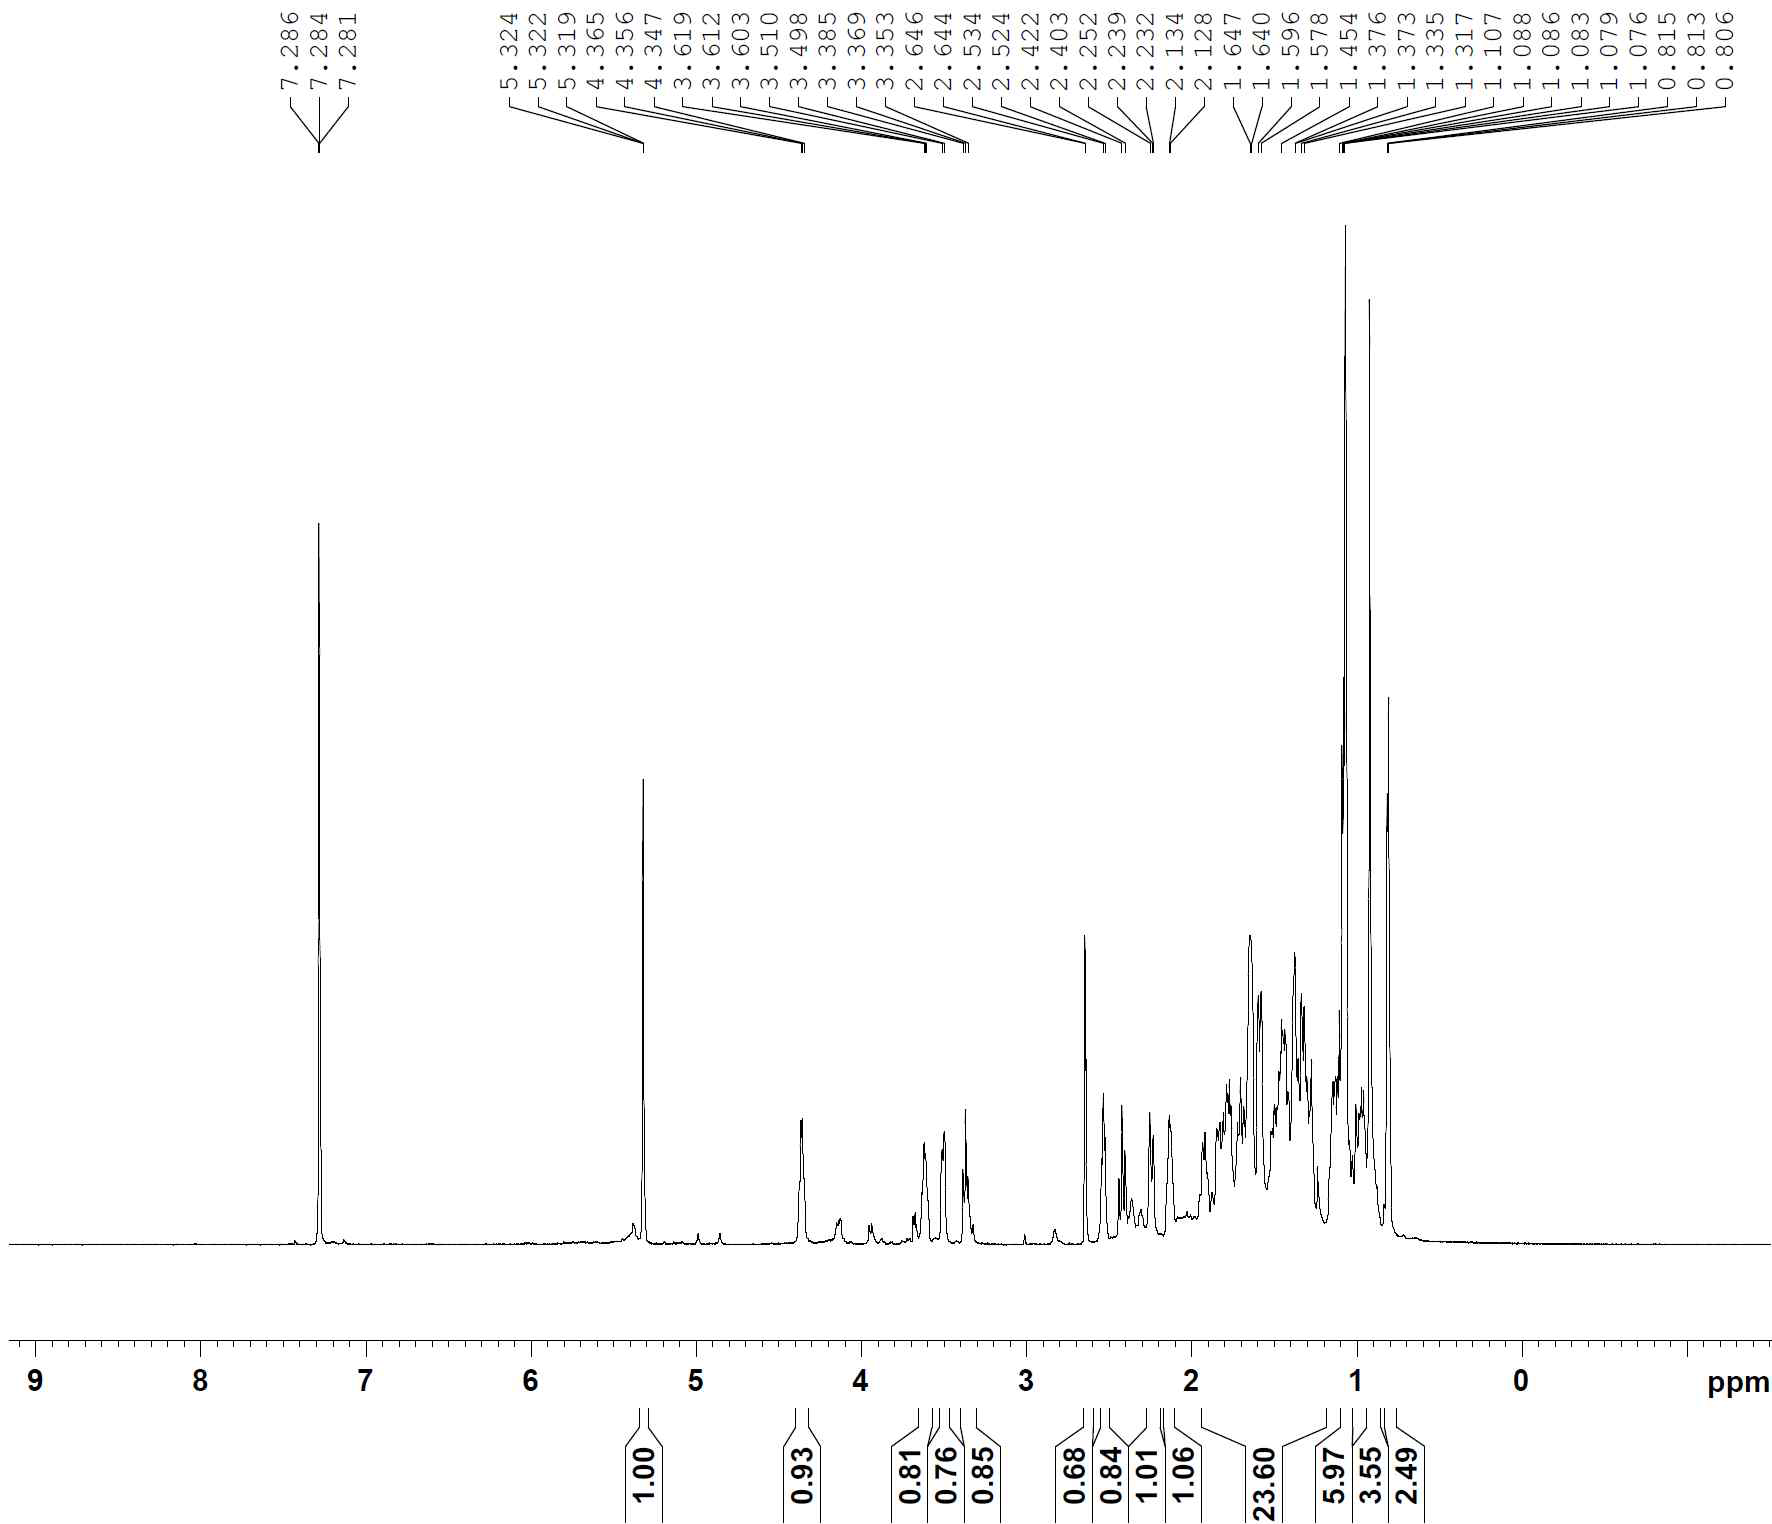 1H-NMR spectrum of compound 4